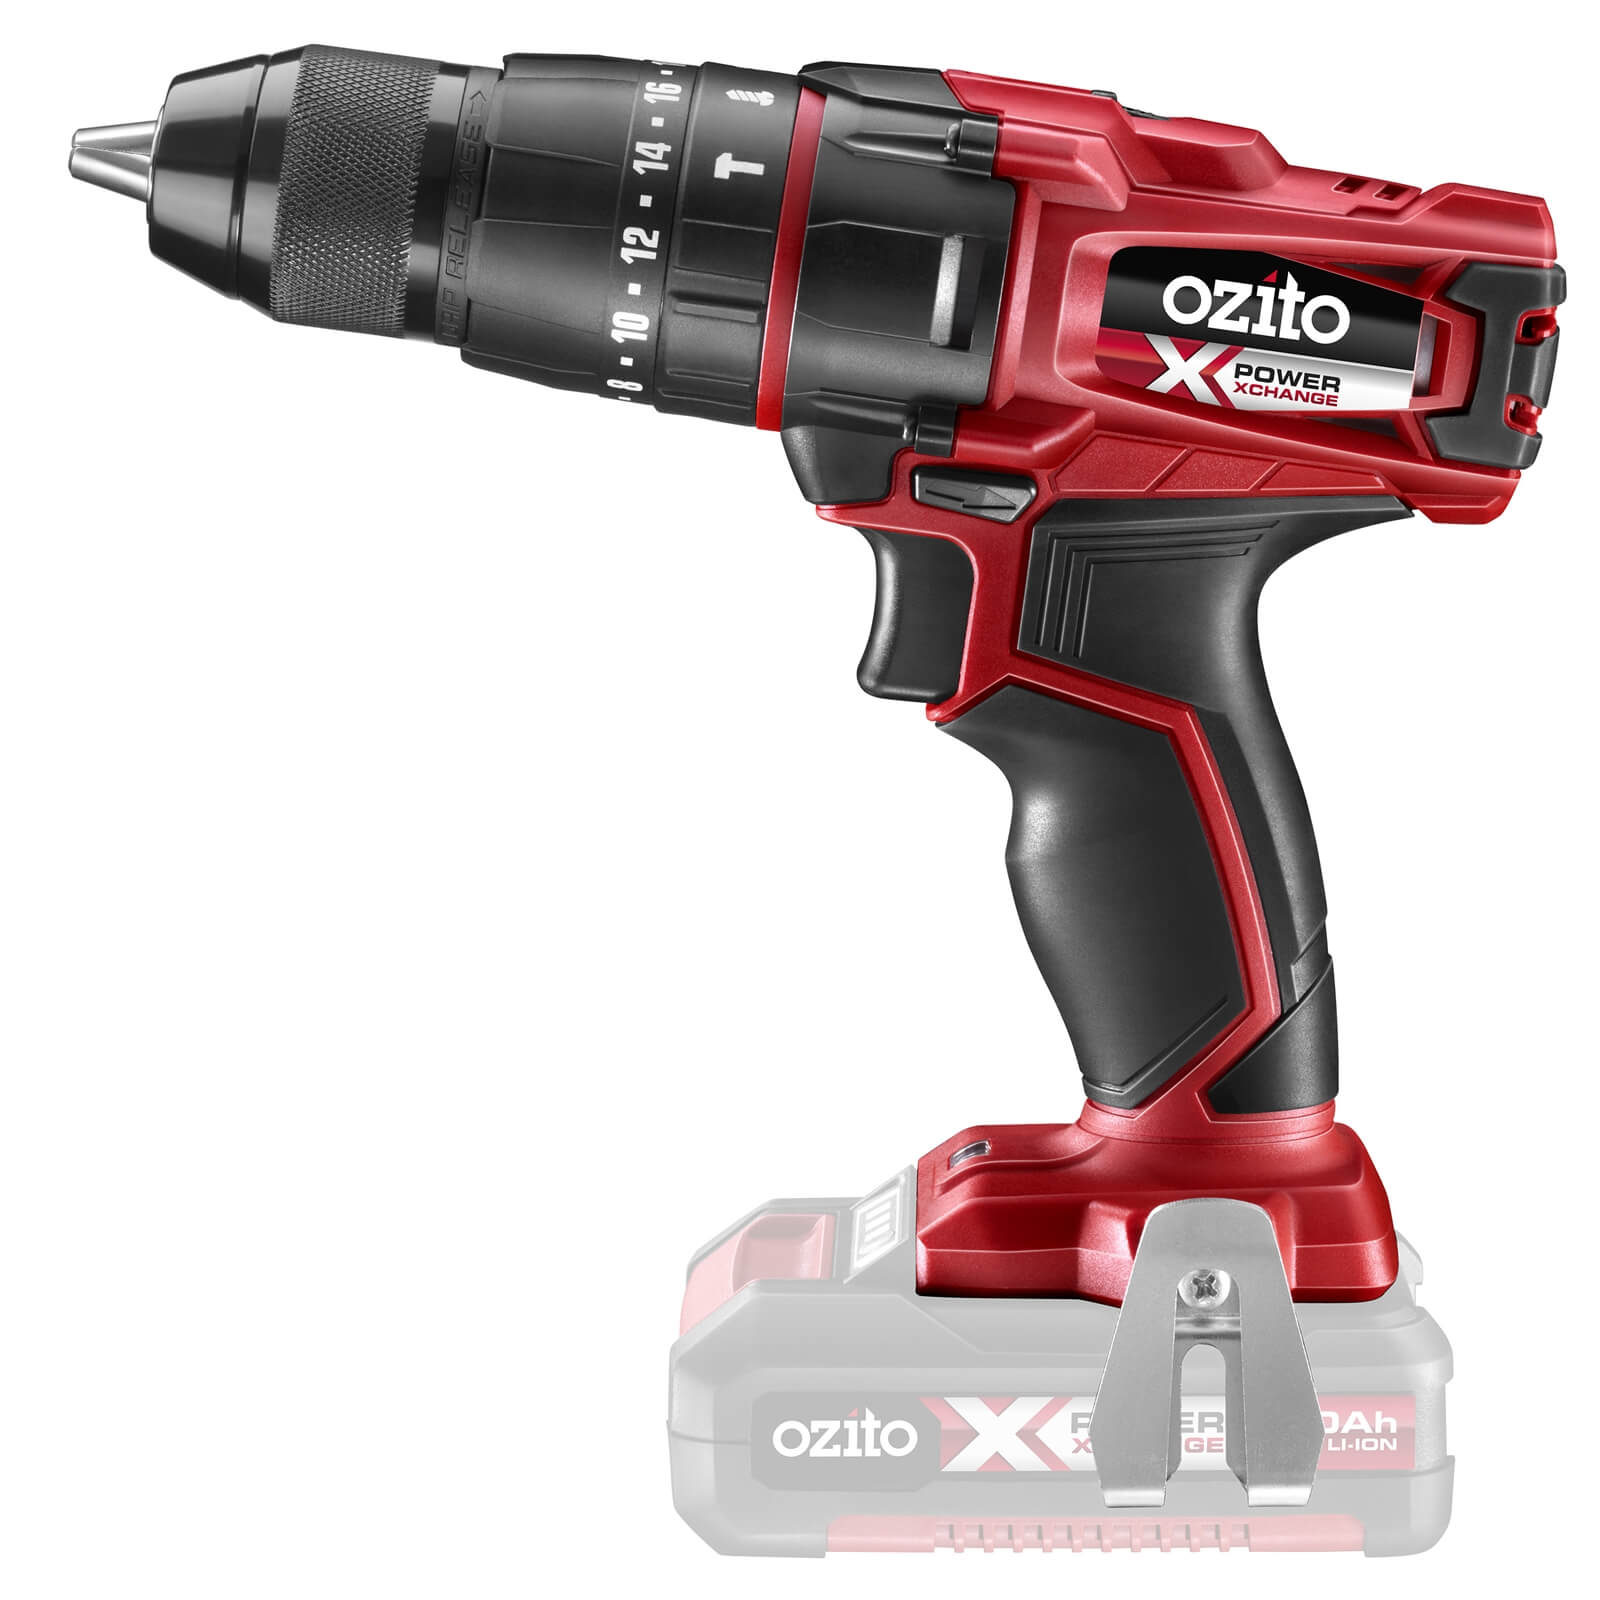 Ozito by Einhell Power X Change 18V Cordless Hammer Drill Skin